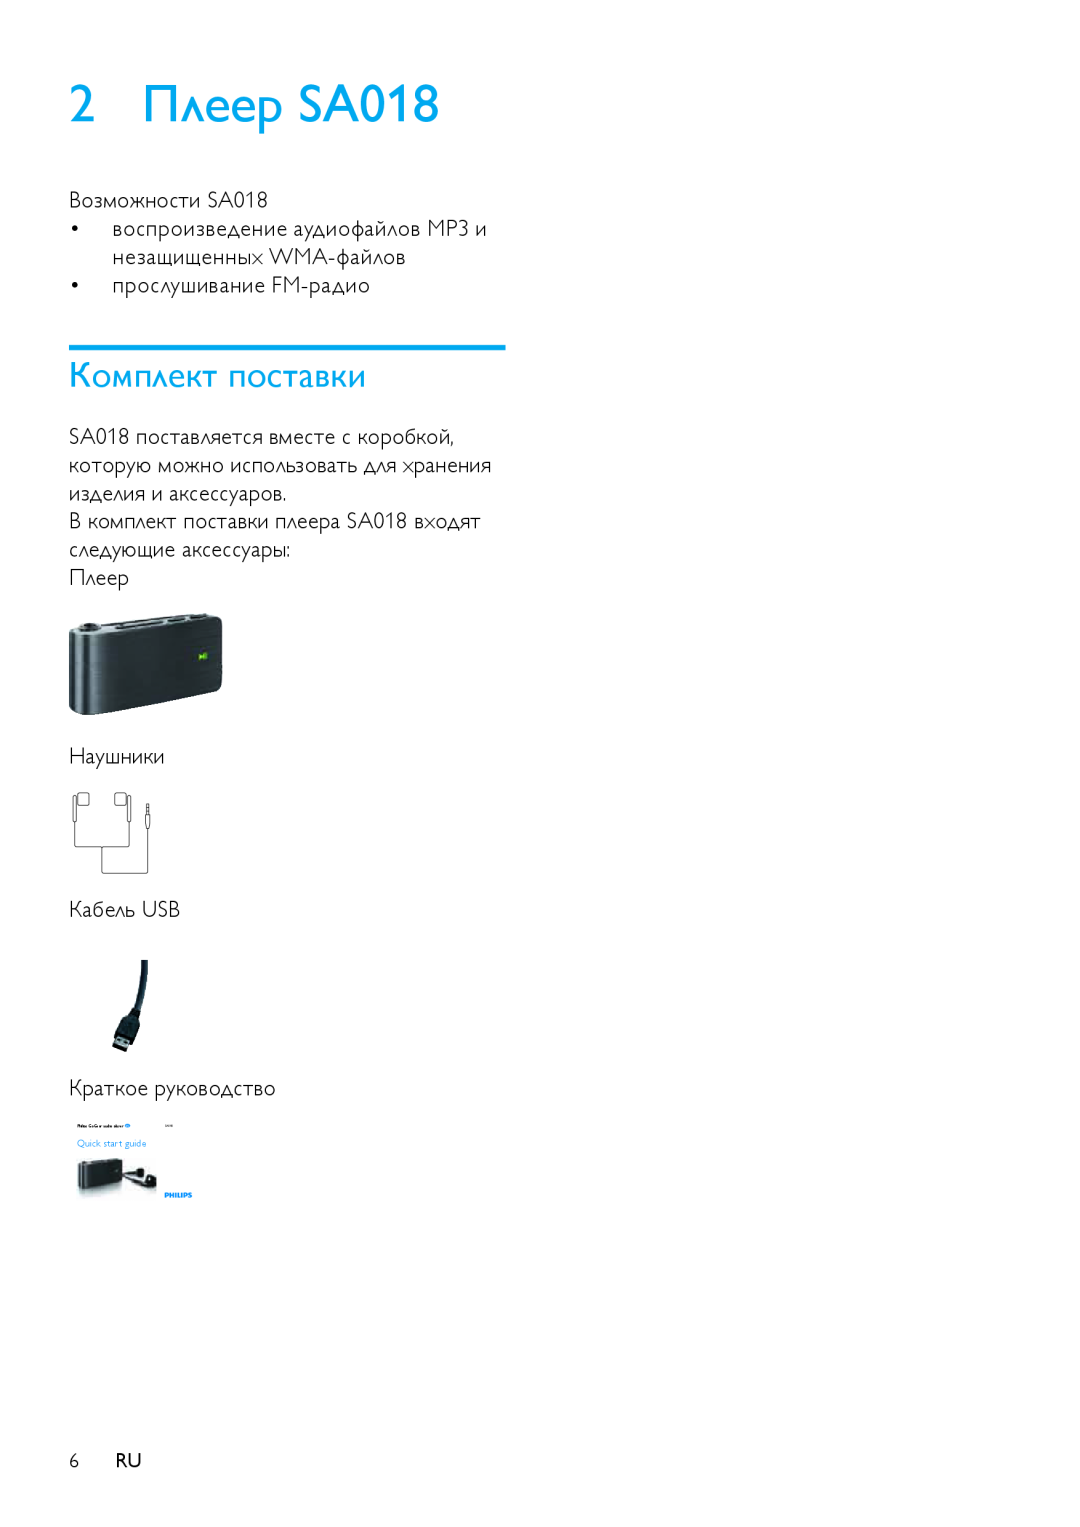 Philips SA018102 manual 2Плеер SA018, Комплект поставки 